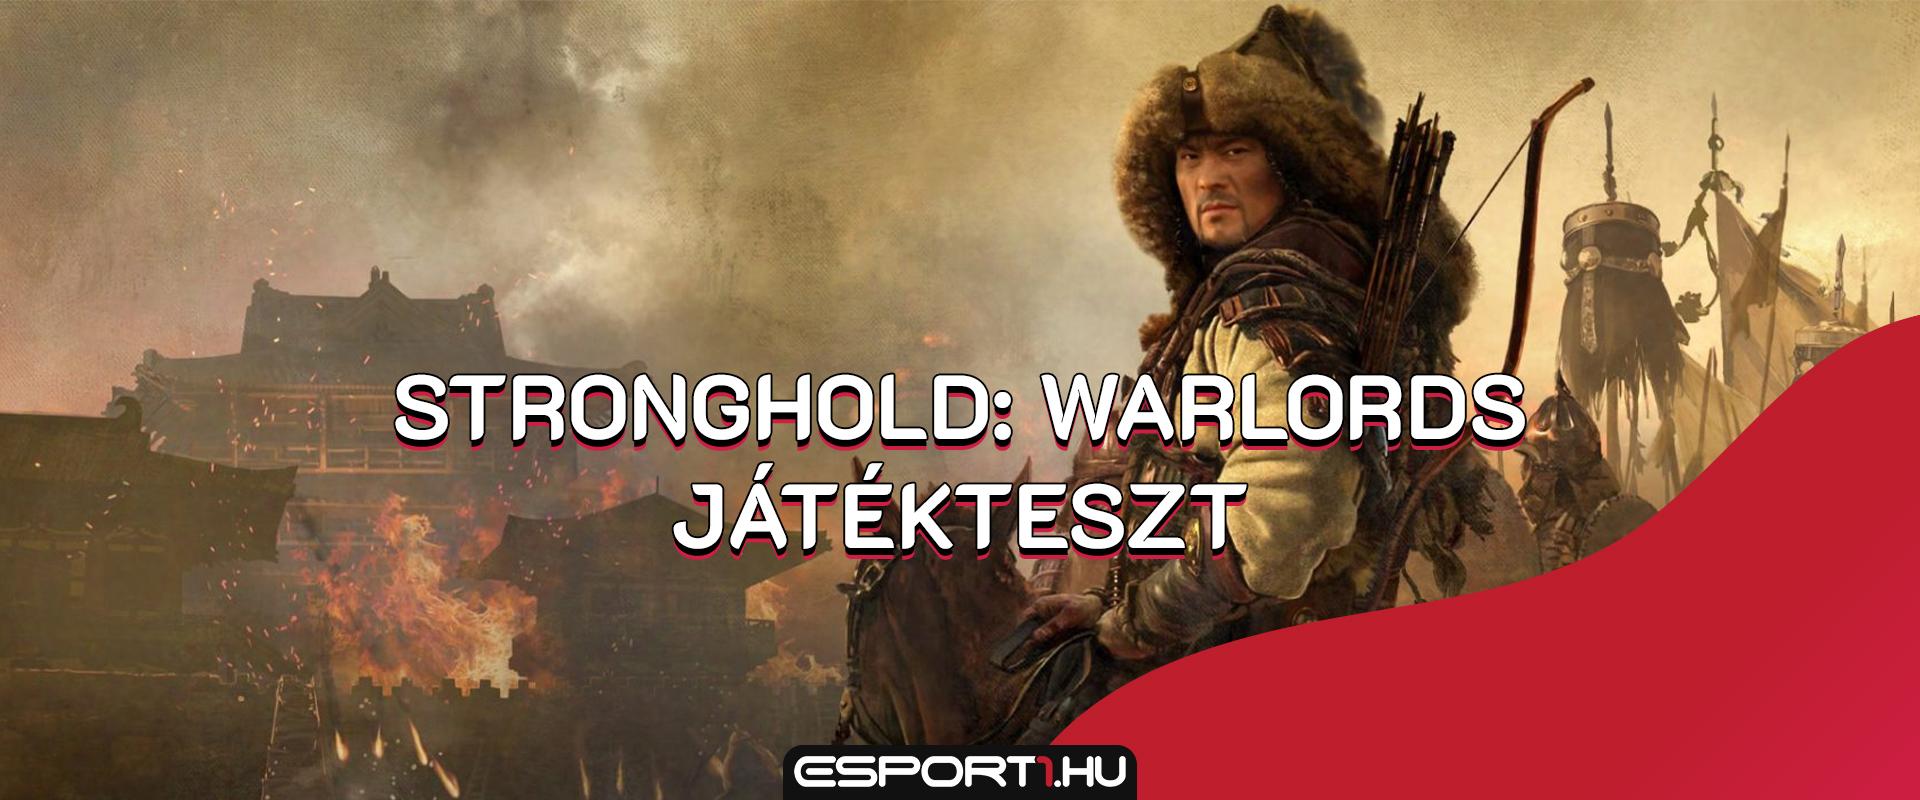 Gaming: Itt van a Stronghold: Warlords, a kultikus széria legújabb folytatása